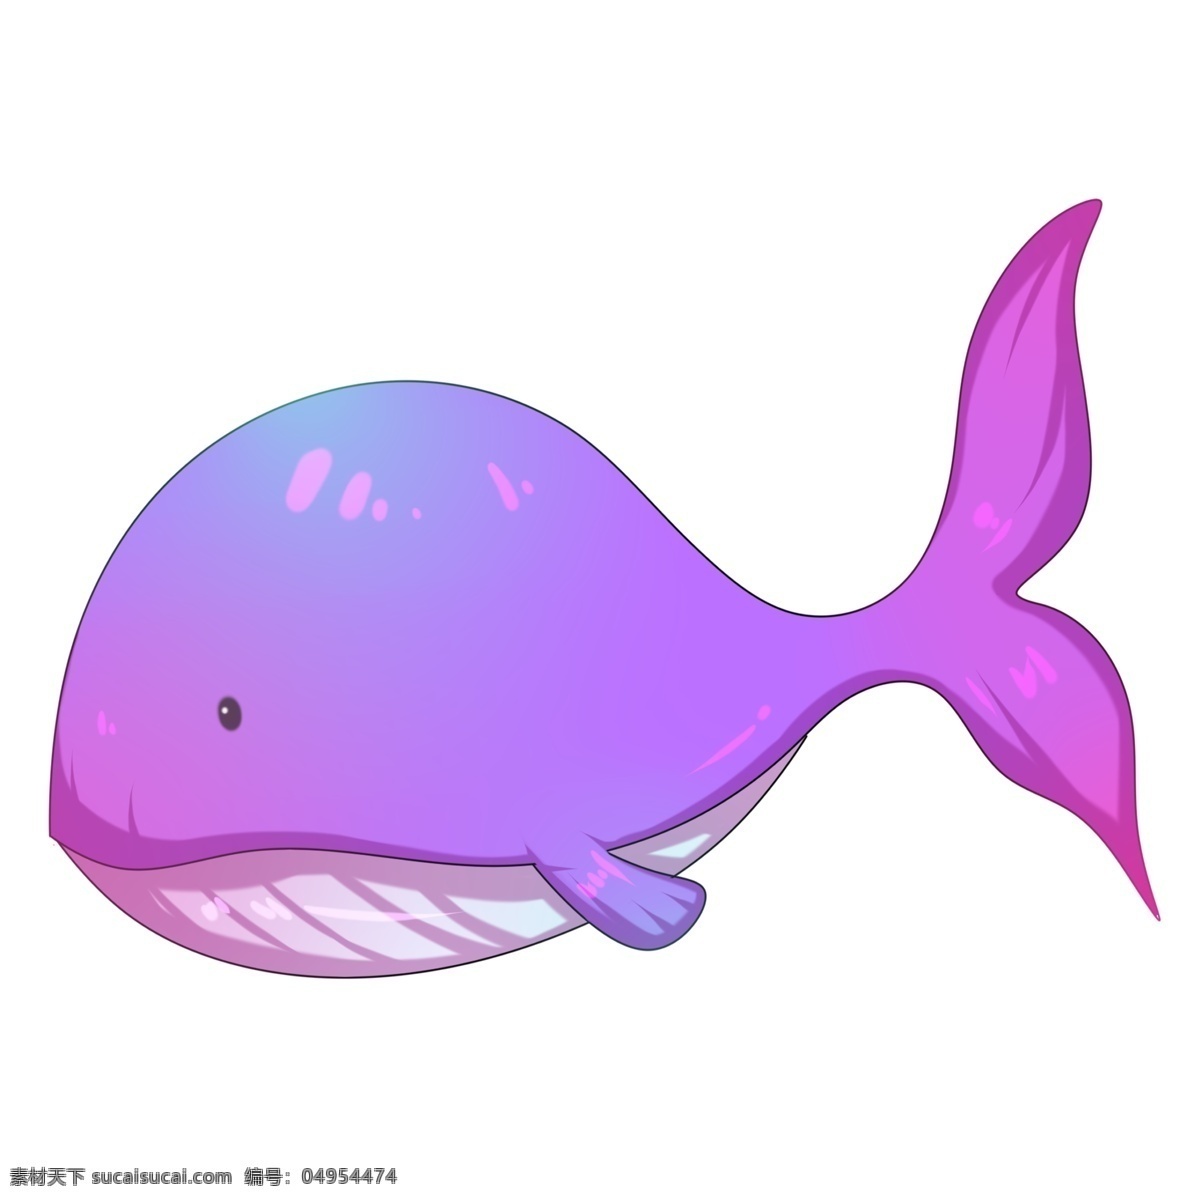 卡通 手绘 圆鼓鼓 粉色 鲸鱼 插画 巨鲸 鲸目 海洋 大海 哺乳动物 游泳 遨游 喷水 玩耍 巨大 可爱 卡通手绘